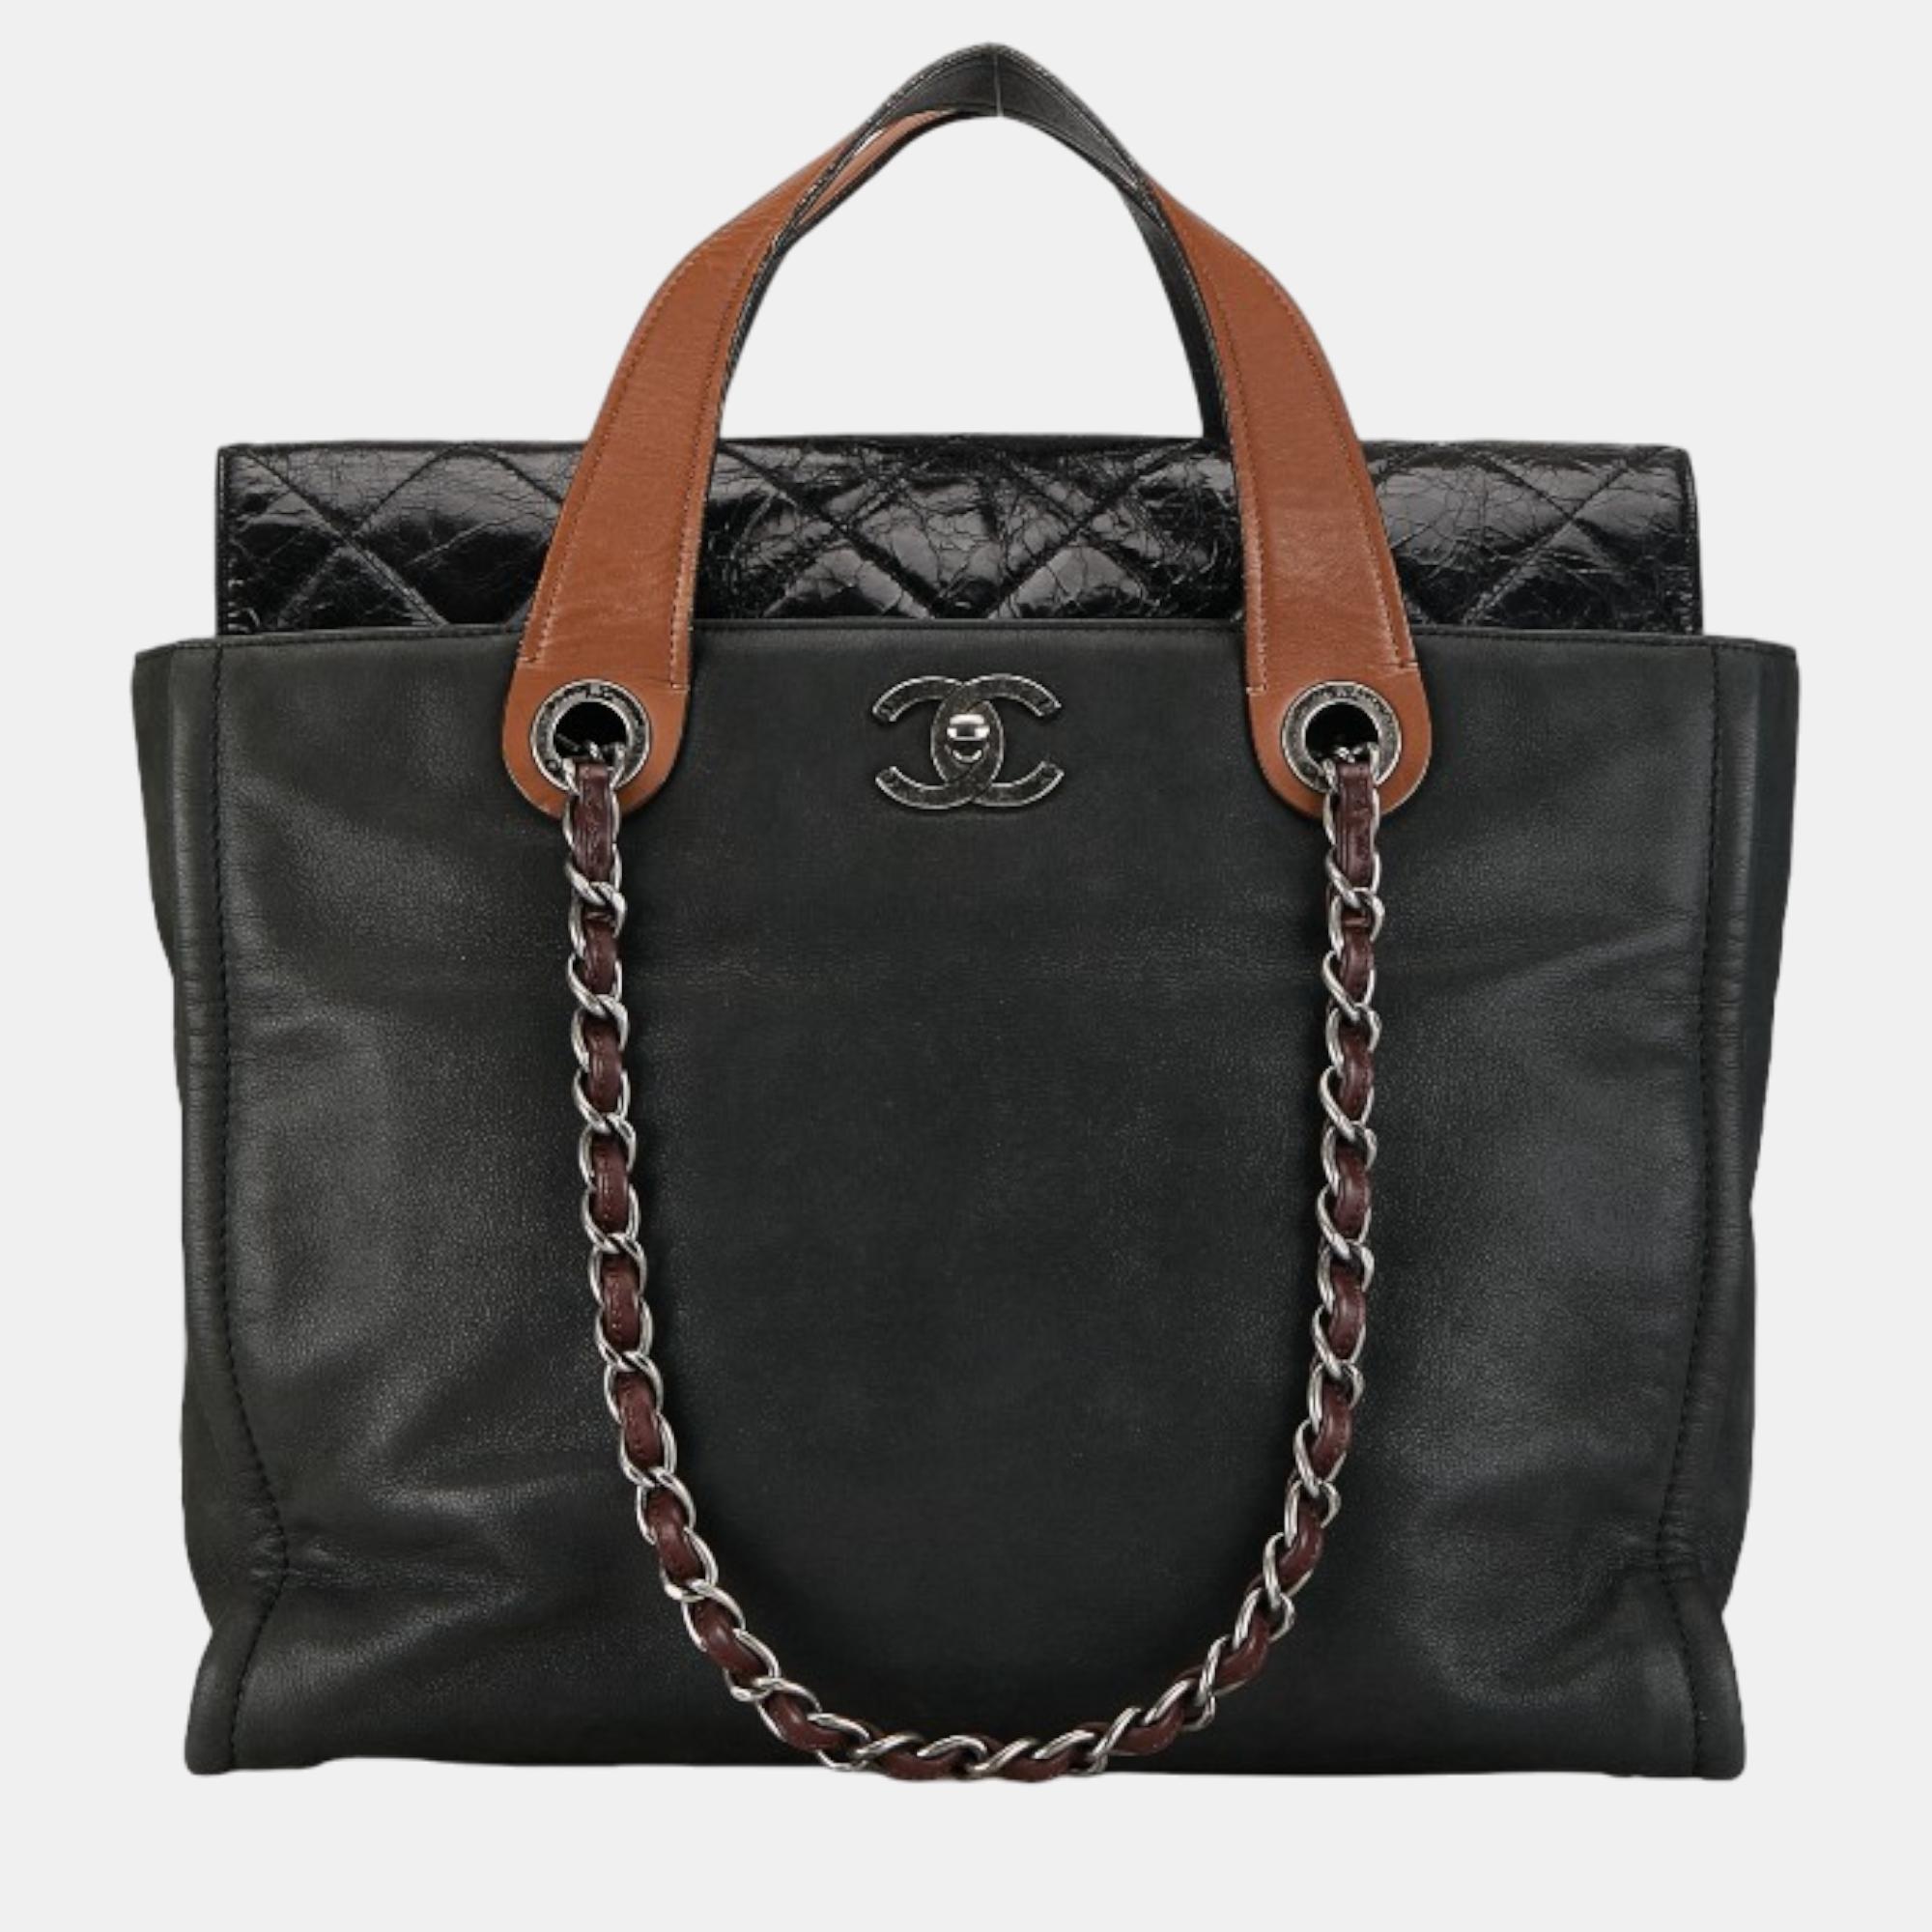 Chanel black leather in the mix portobello tote bag